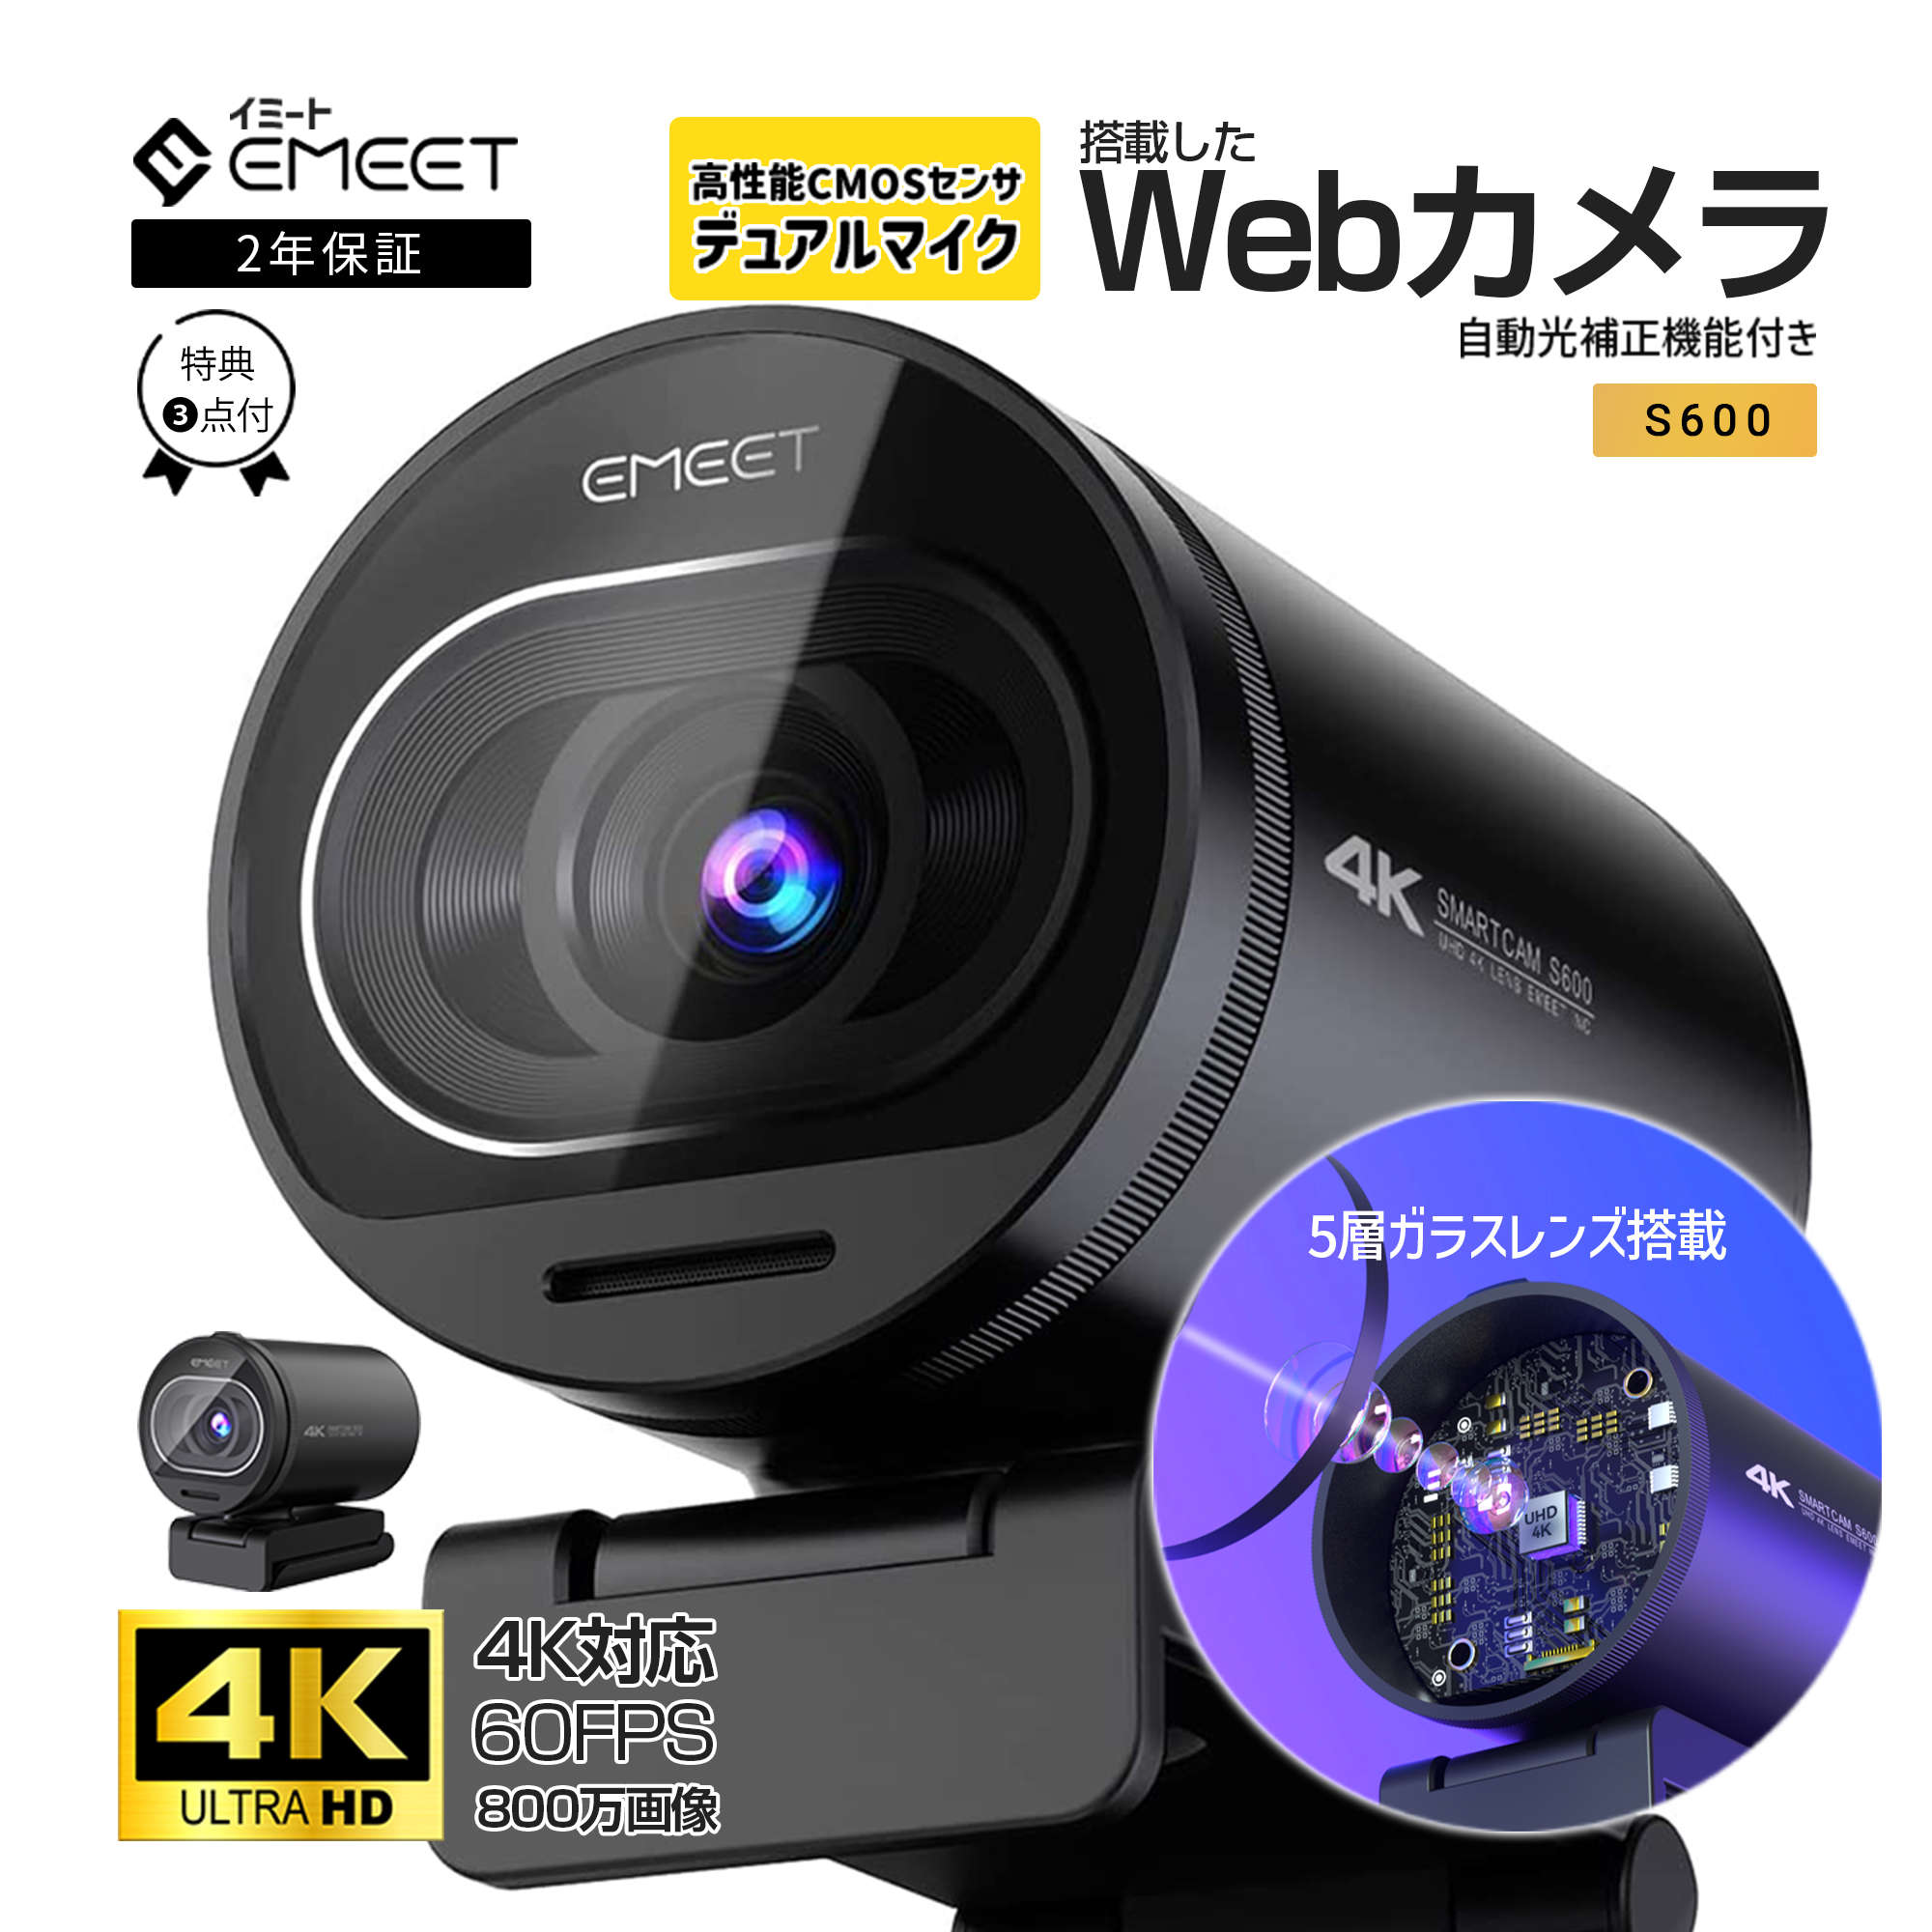 【初夏セール13%OFF|2年保証|特典付】 EMEET 4K ウェブカメラ S600 60fps Webカメラ PCカメラ オートフォーカス マイク付き Webカメラ 広角 外付け